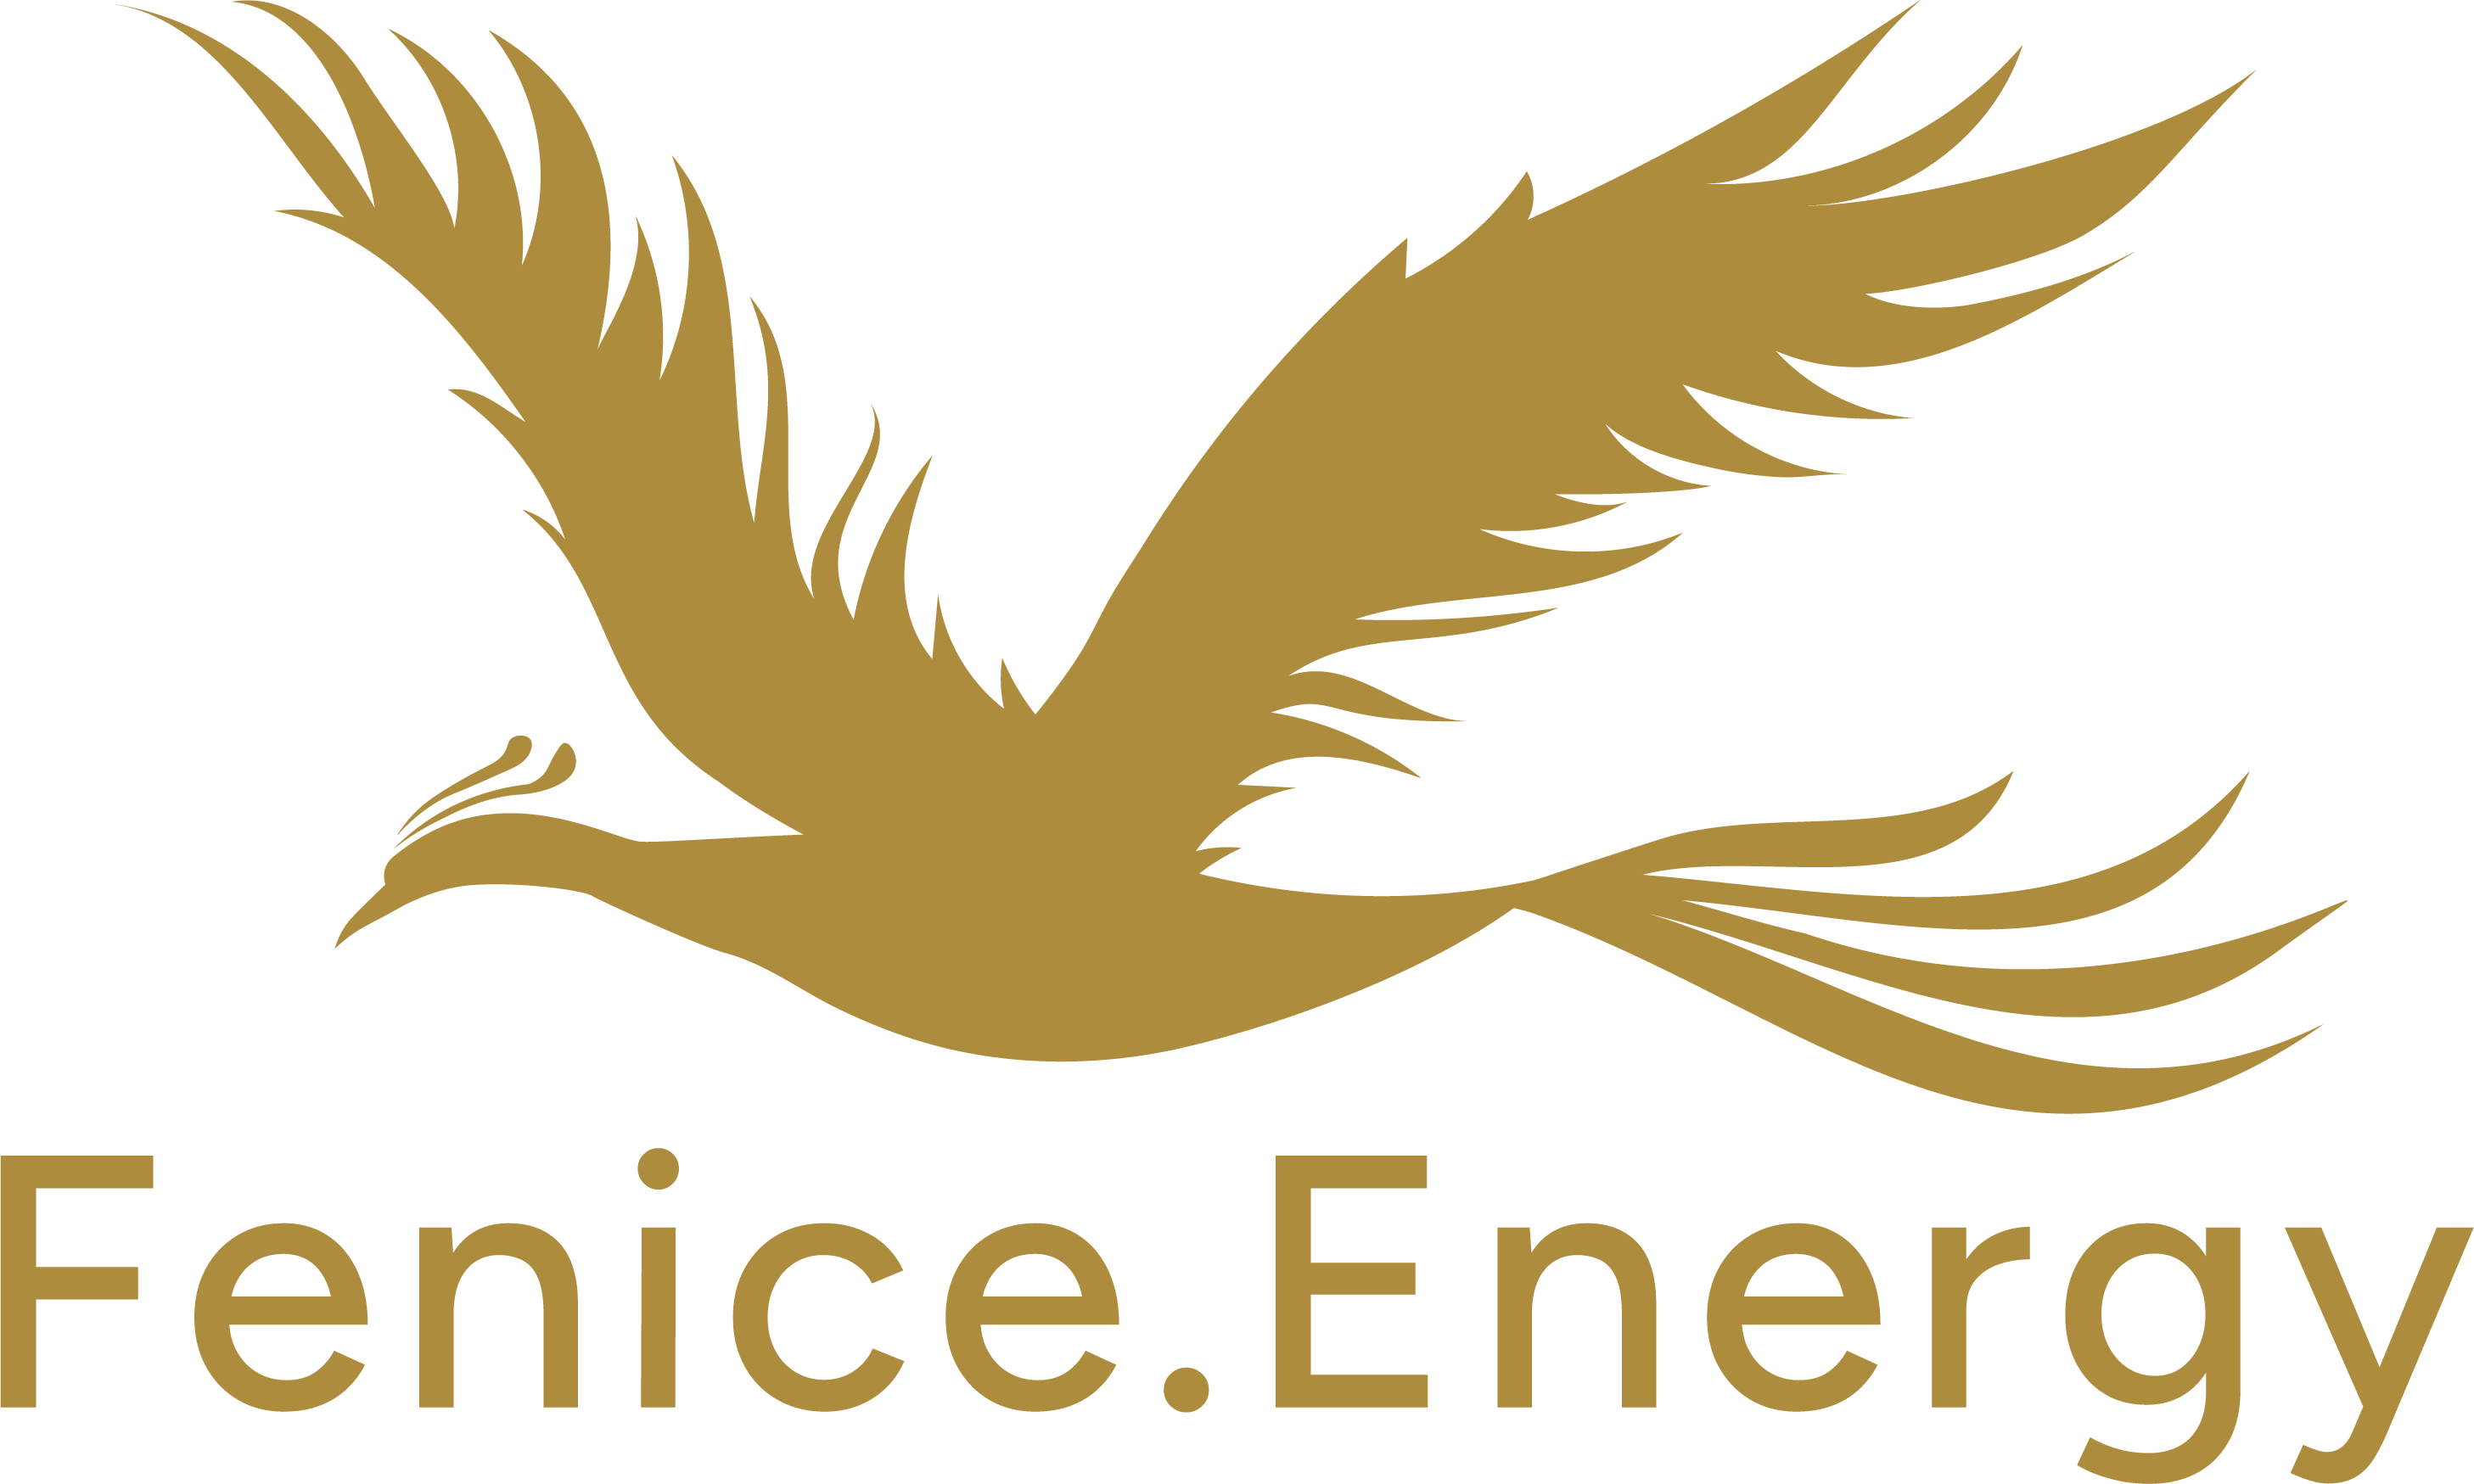 Fenice.energy Srl